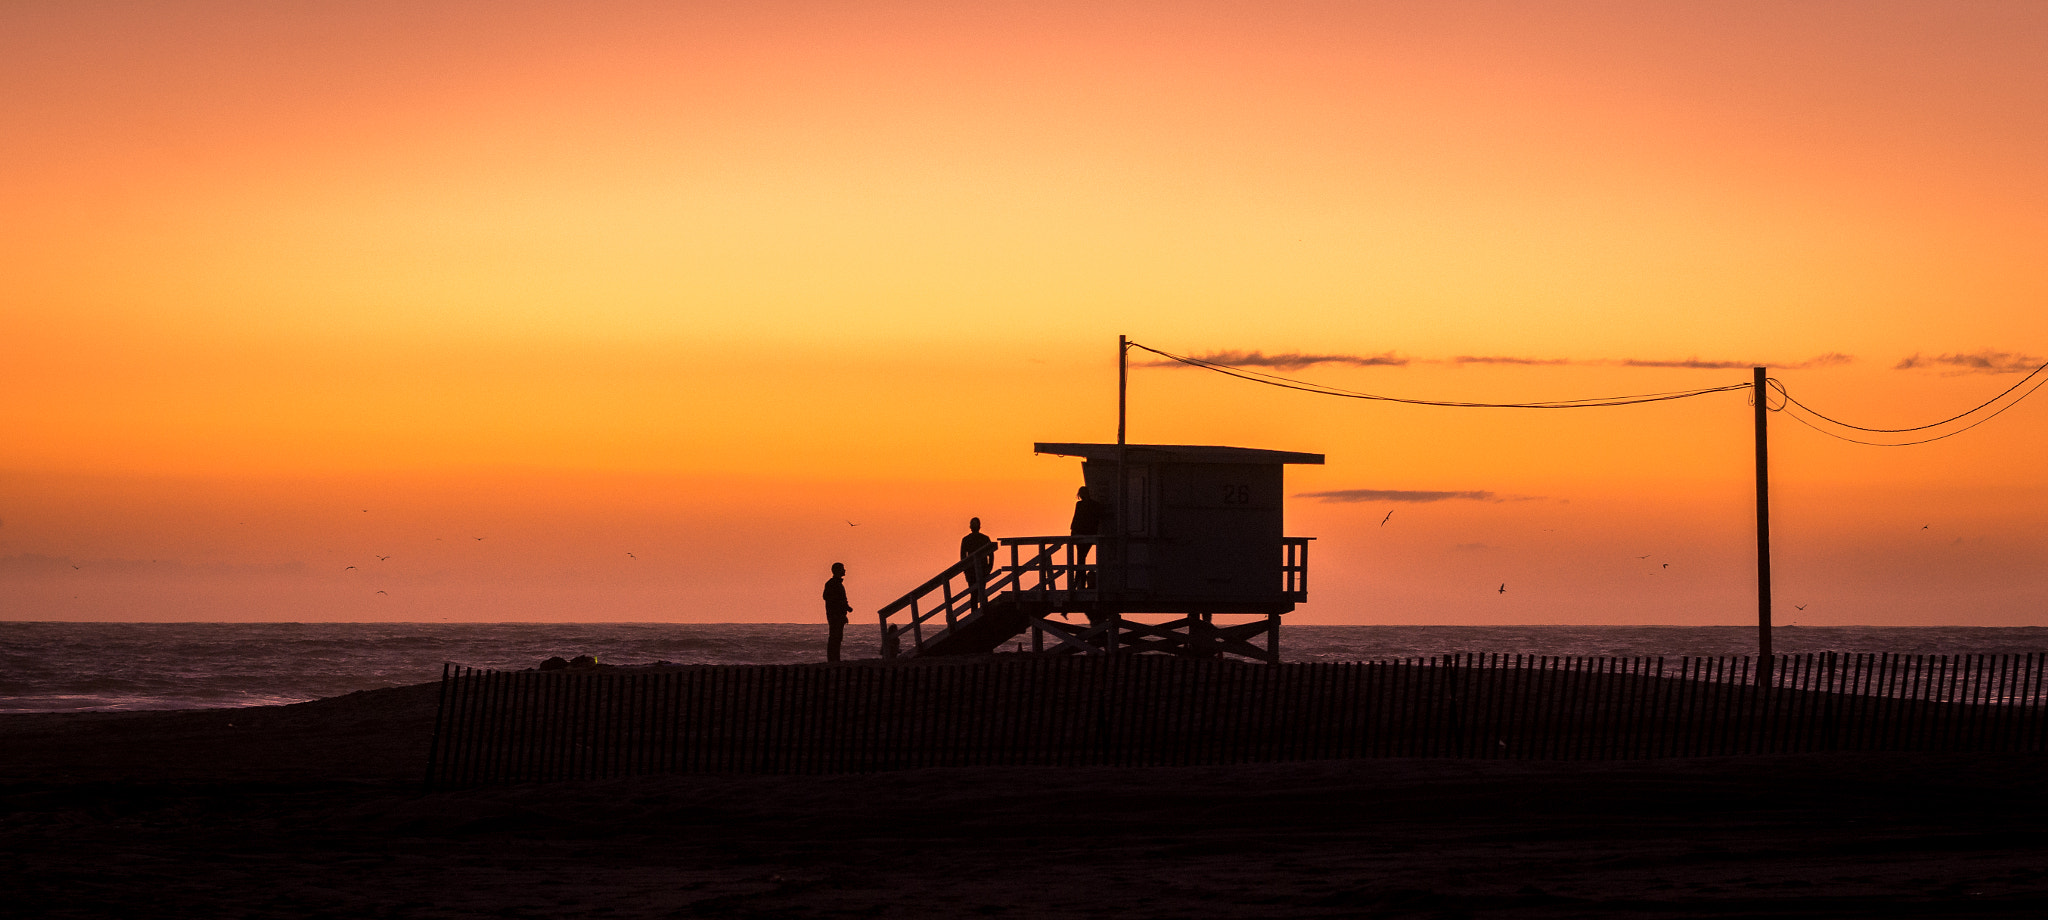 Nikon D7100 sample photo. Sunset near the beach photography